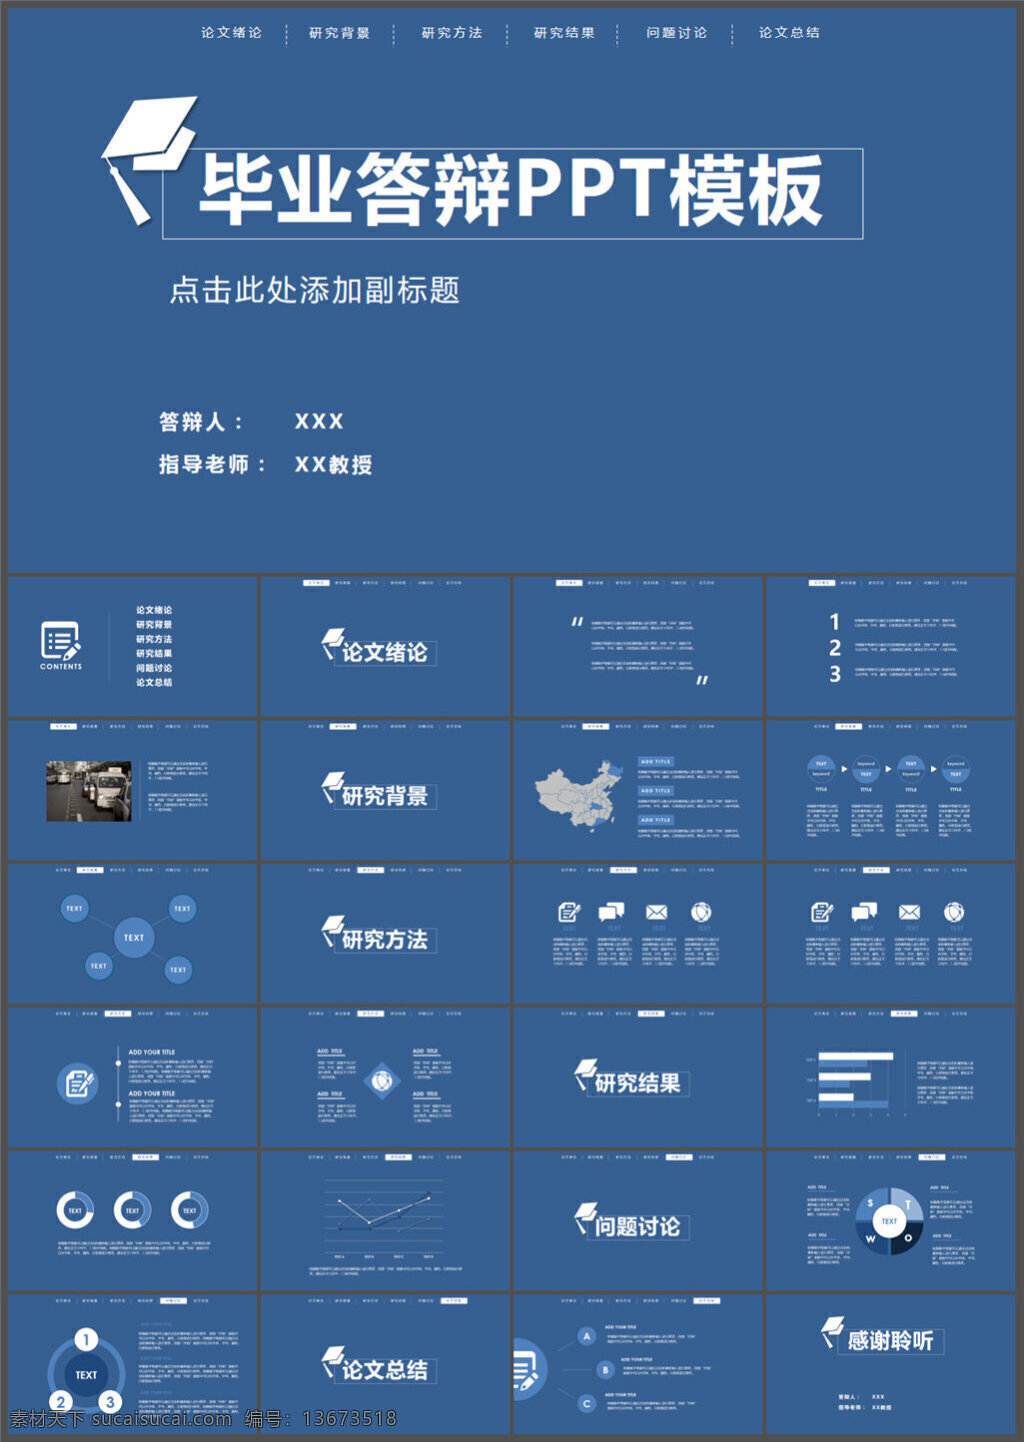 顶部 导航 简约 论文 答辩 模板 图表 制作 多媒体 企业 动态 模版素材下载 pptx 蓝色